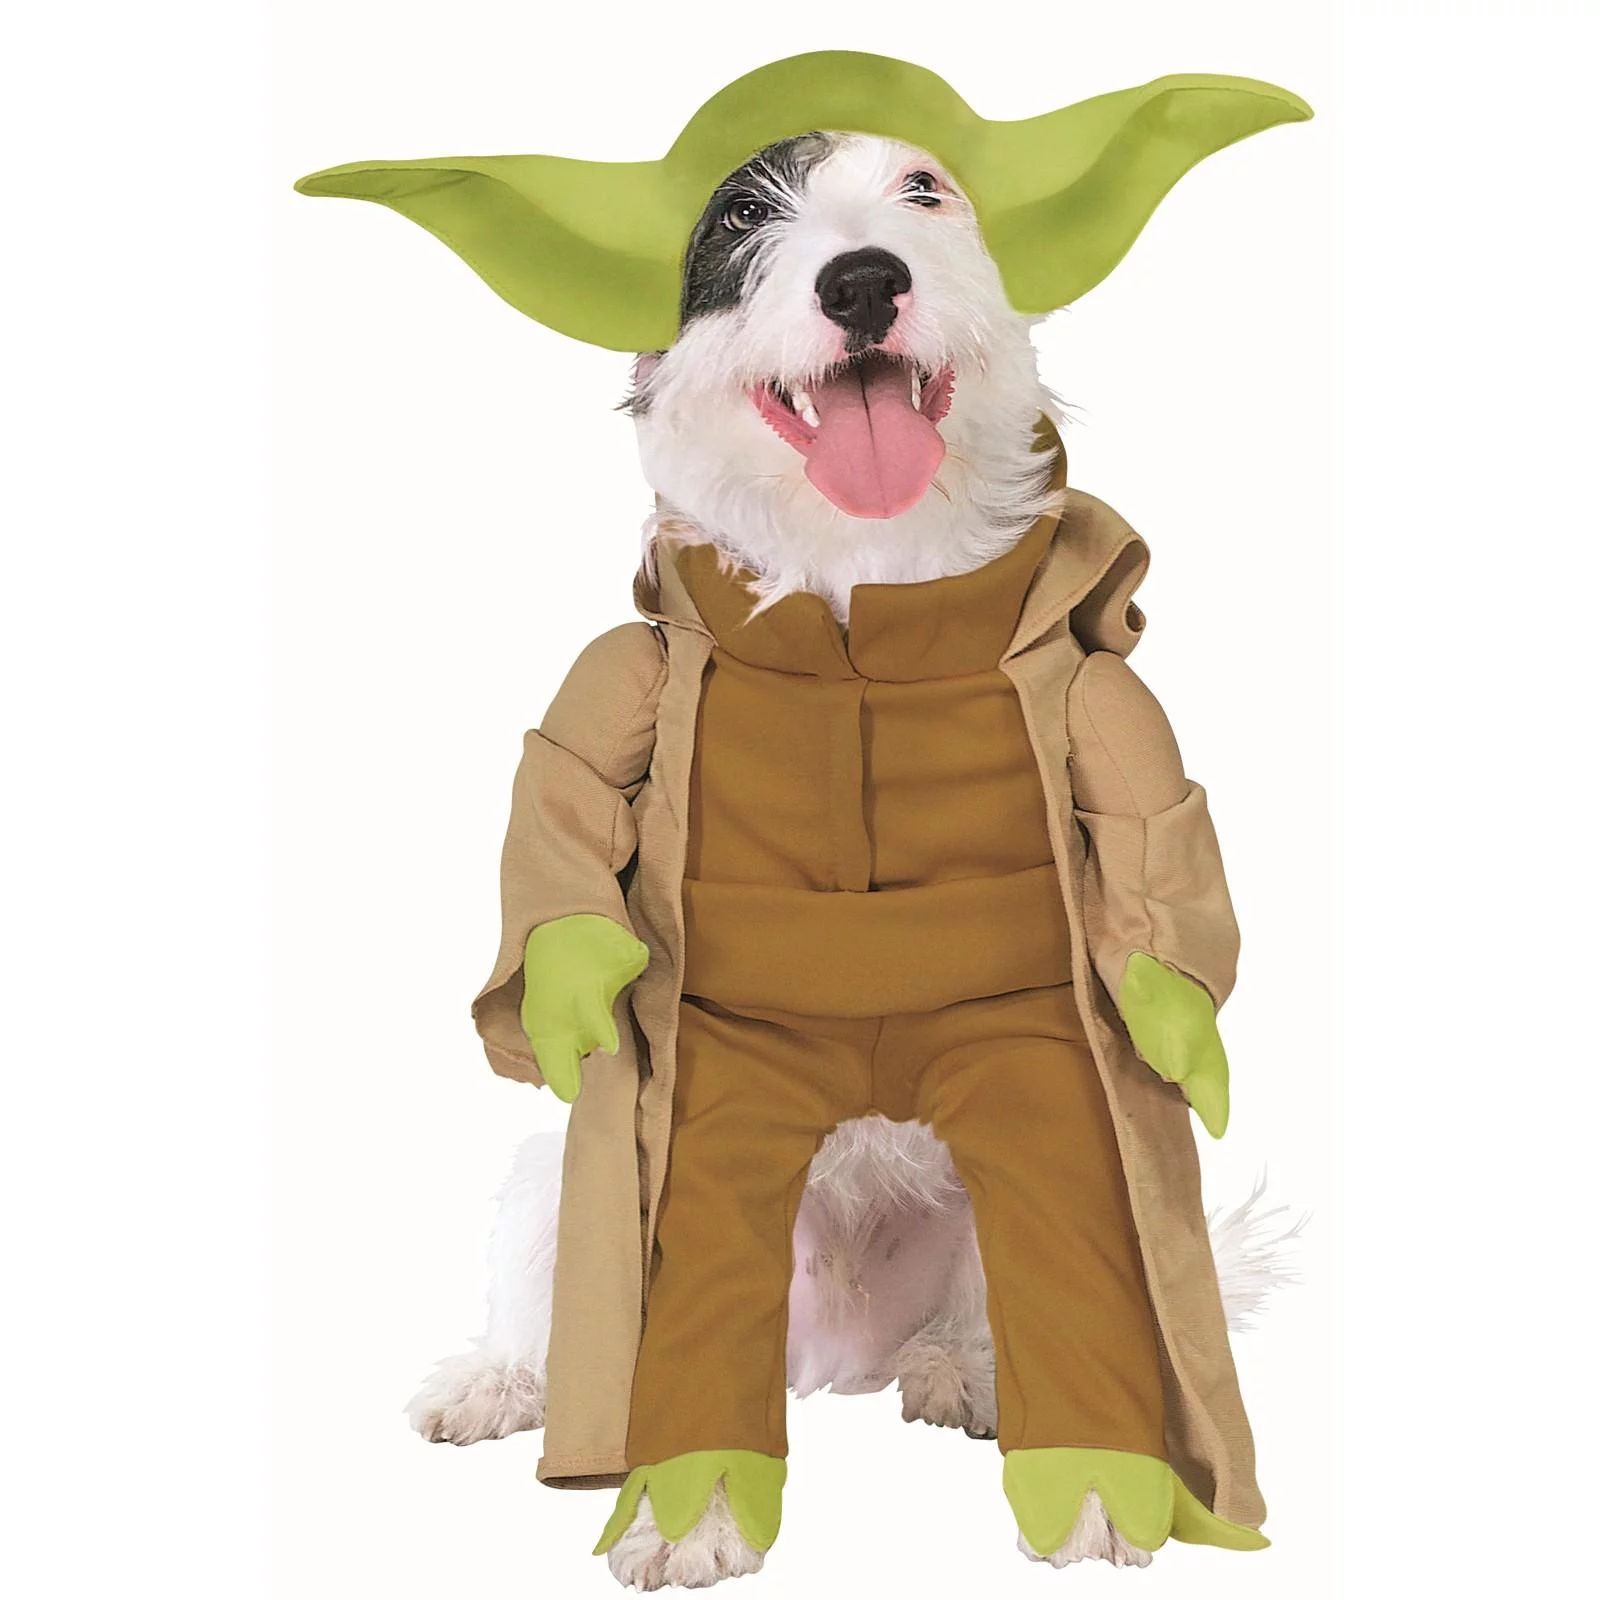 Star Wars Yoda Dog Costume - Small | Walmart (US)